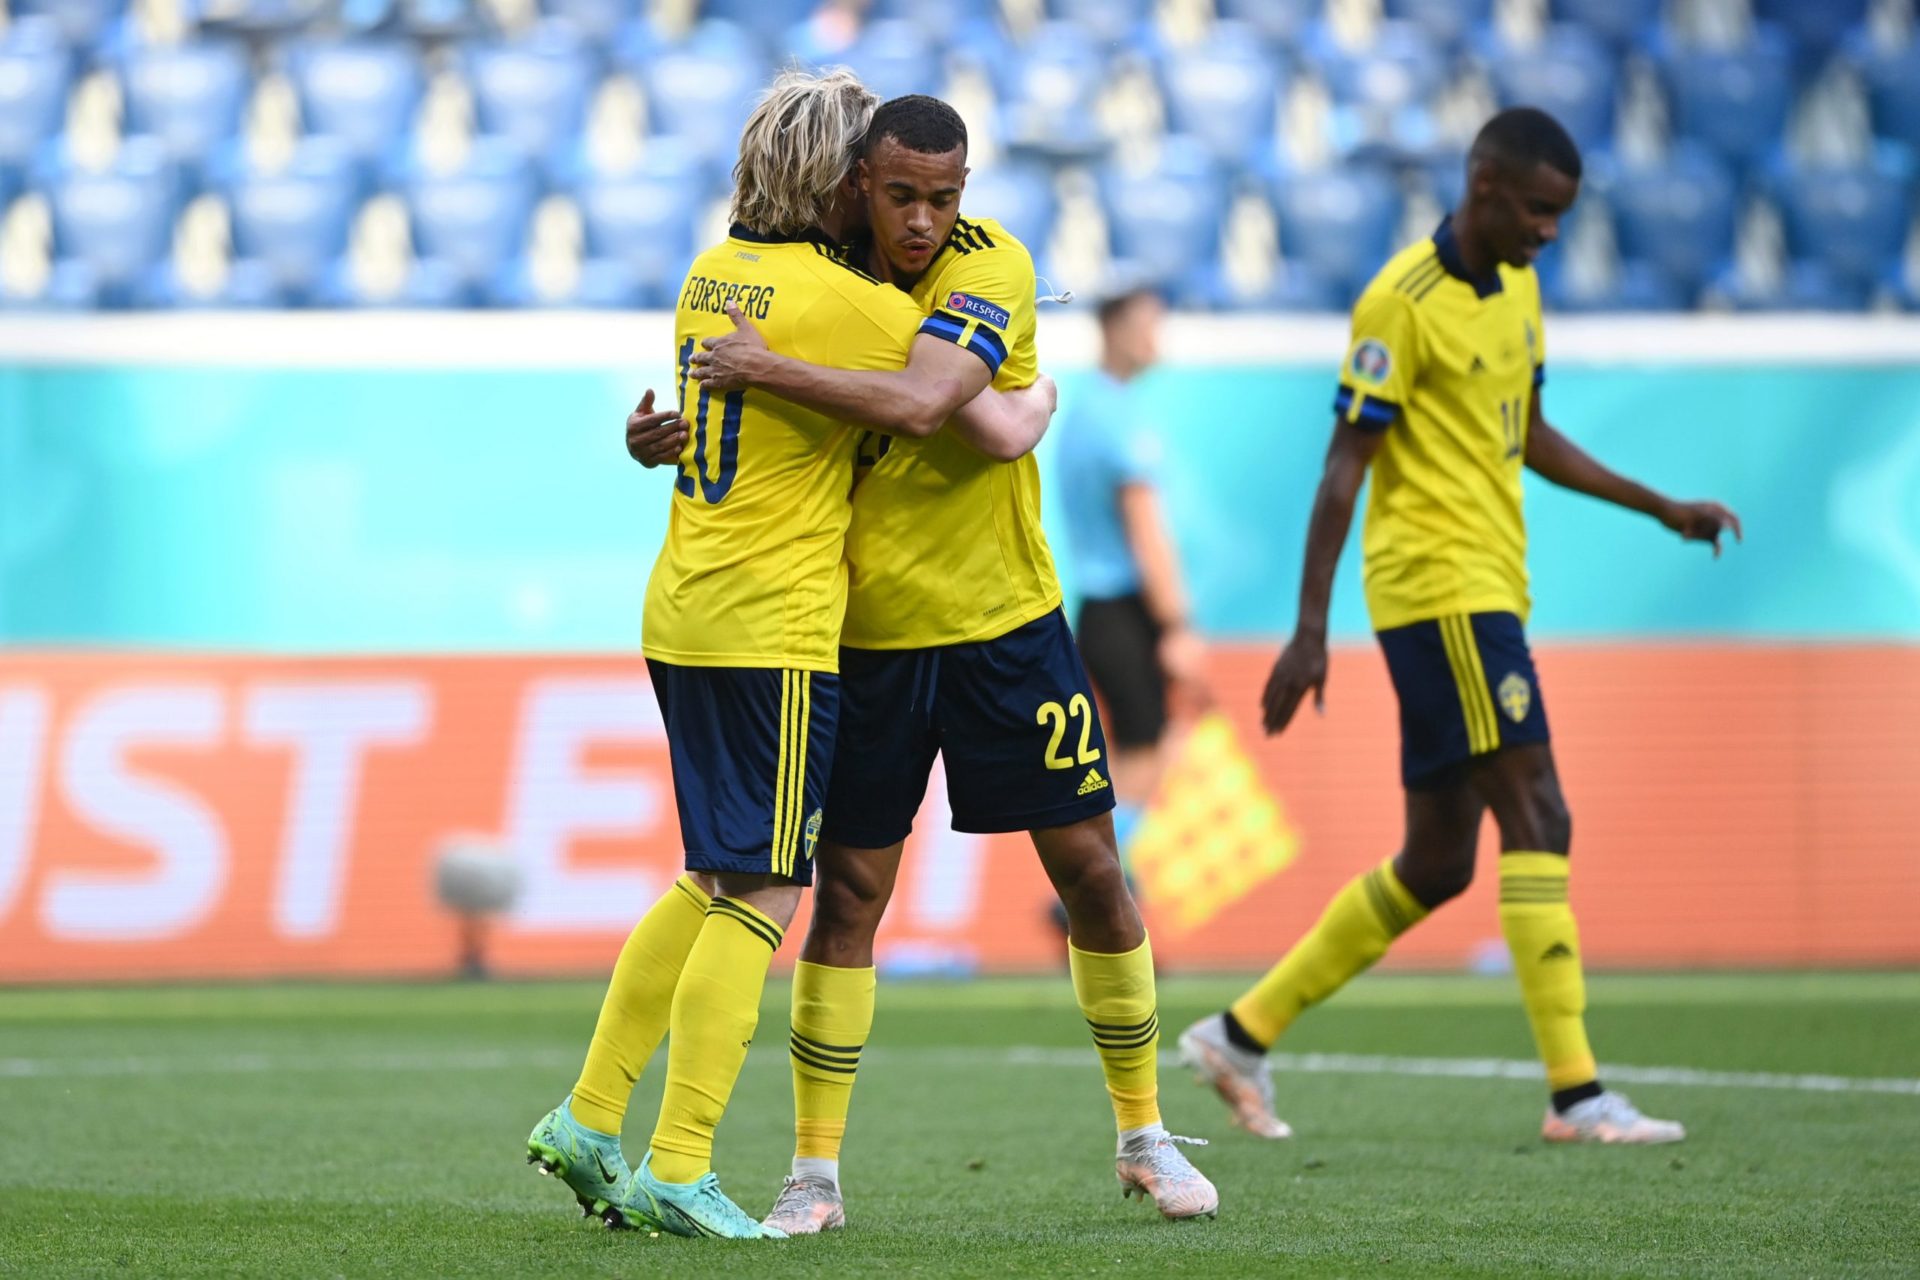 Suecia derrota a Eslovaquia y se acerca a los octavos en la EURO 2020 (VIDEO)